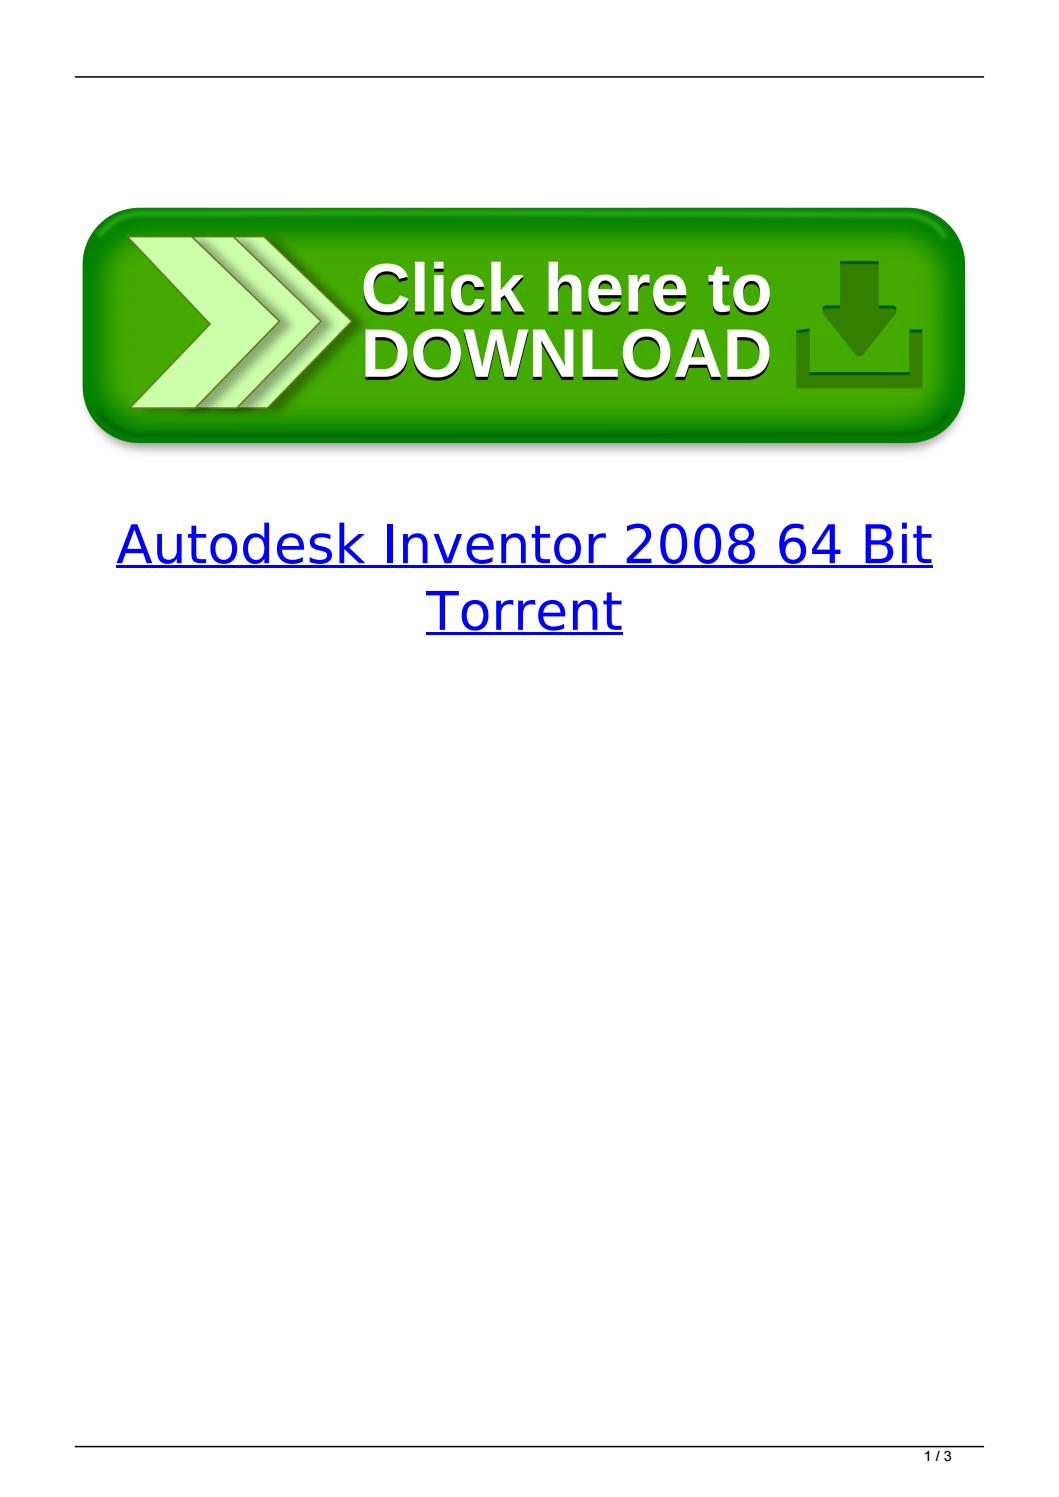 Autodesk AutoCAD 2020.1 Crack Full Torrent Free